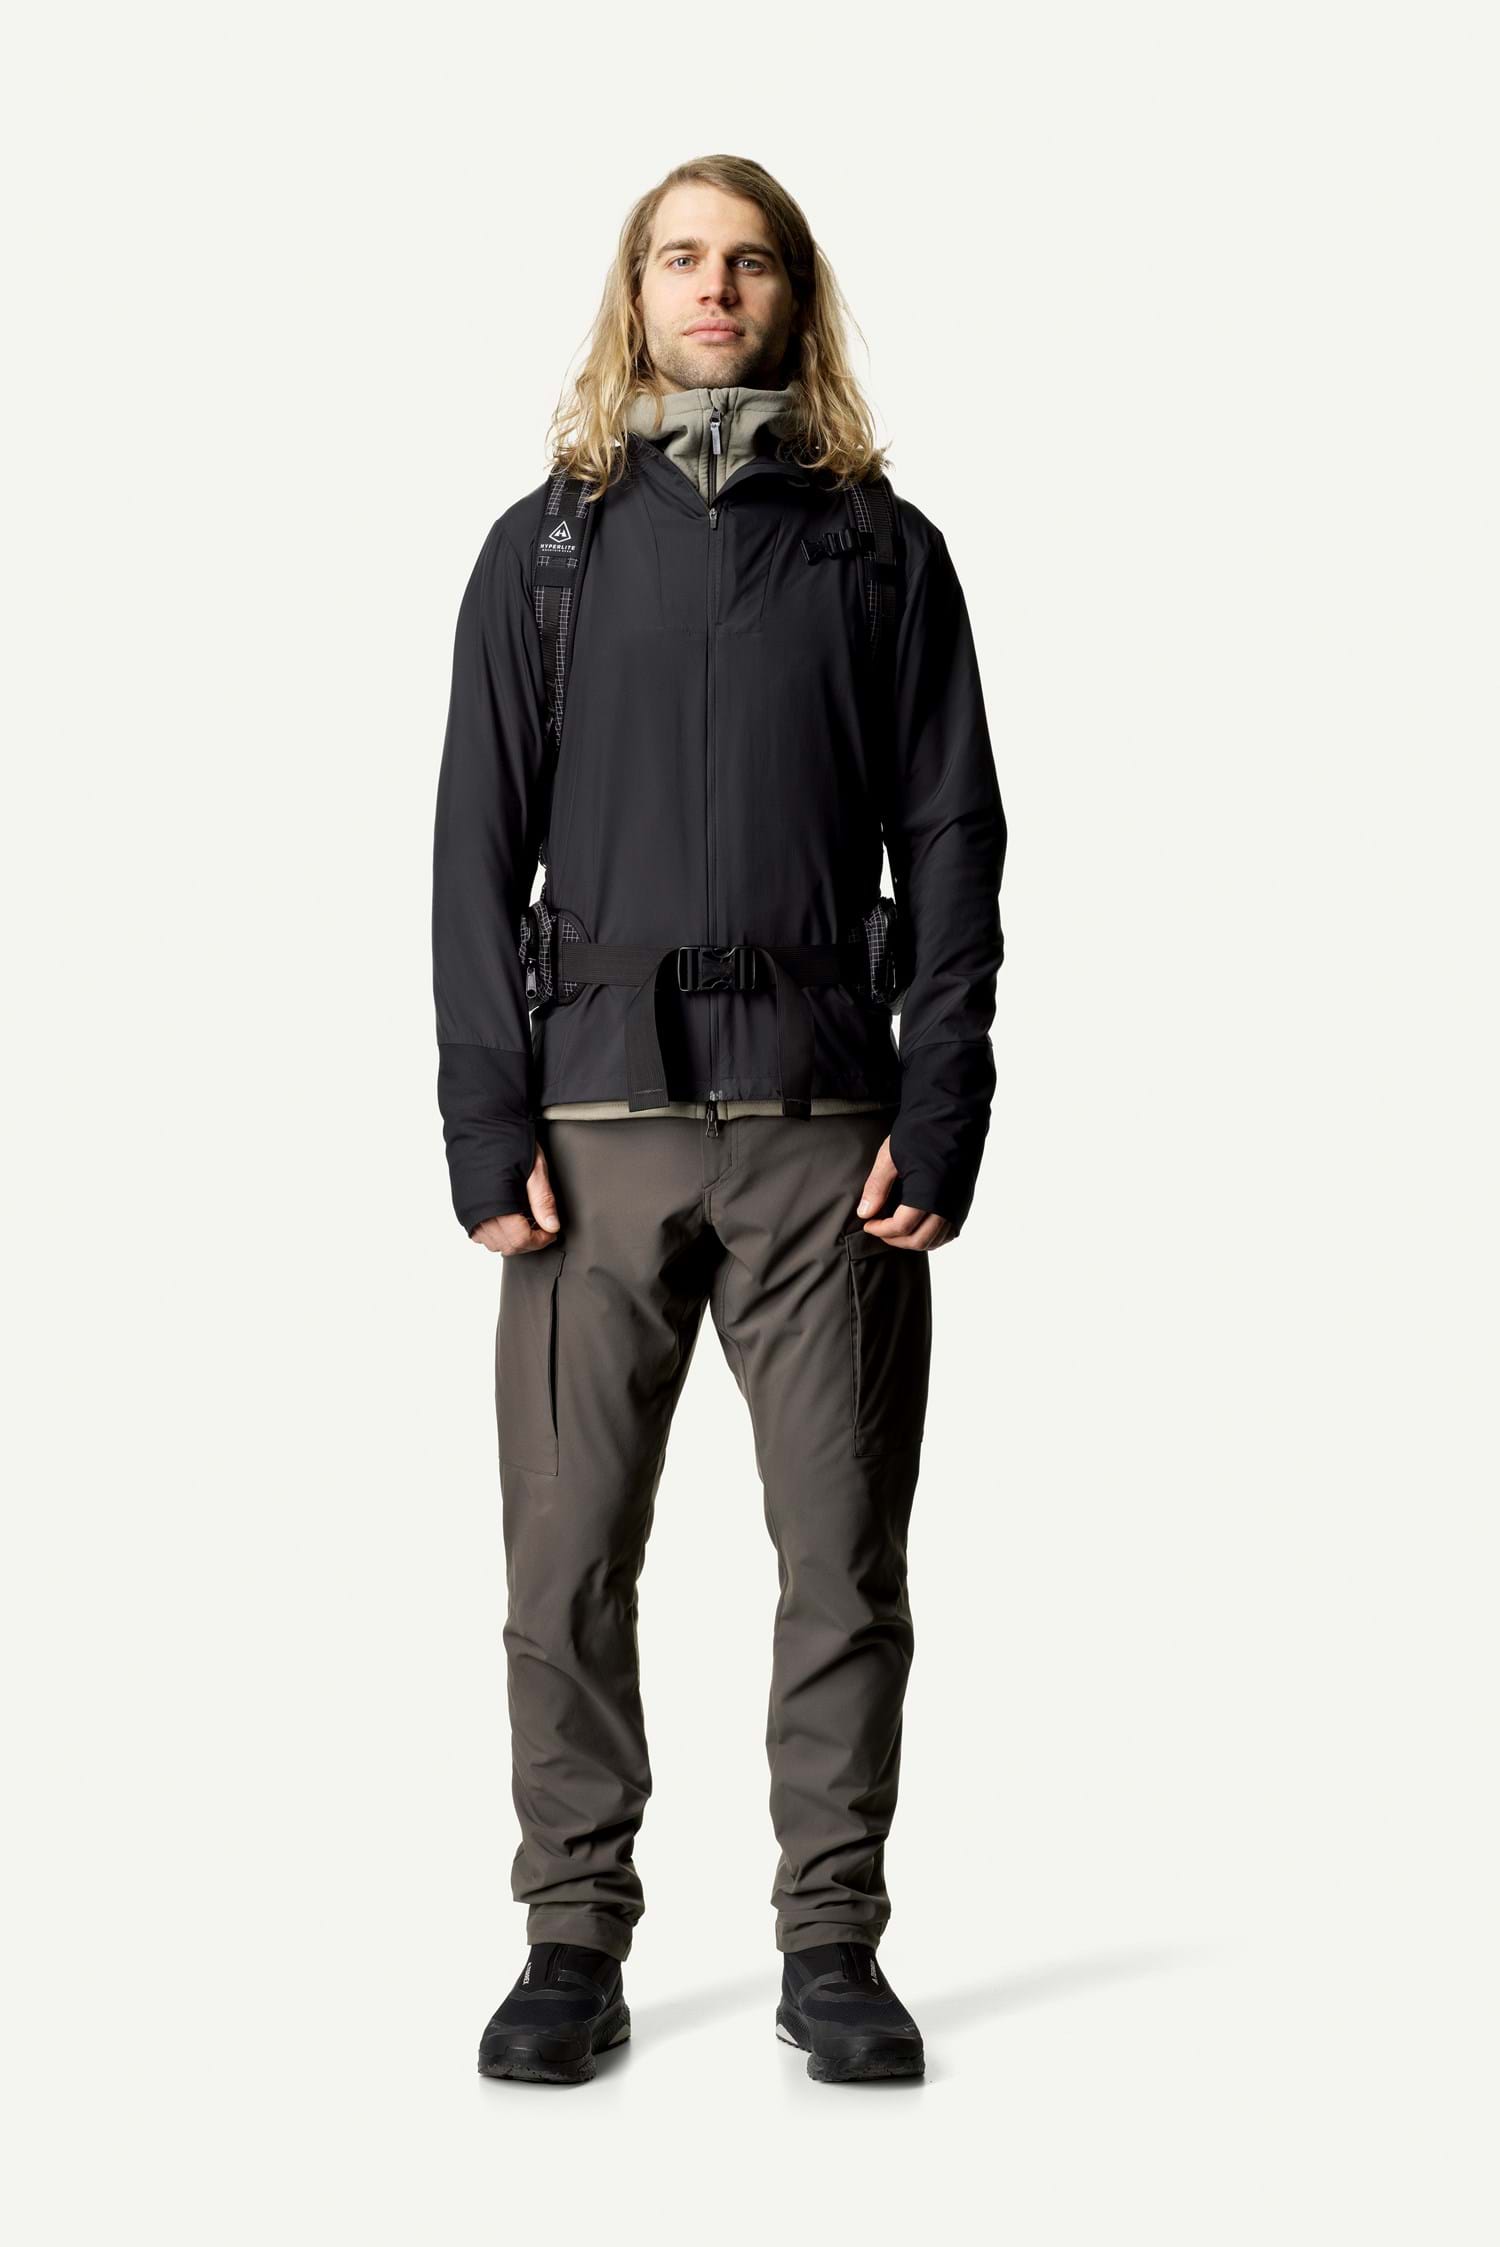  Vento Windbreaker M, Hawaiian Sun - men's running jacket -  LA SPORTIVA - 82.88 € - outdoorové oblečení a vybavení shop